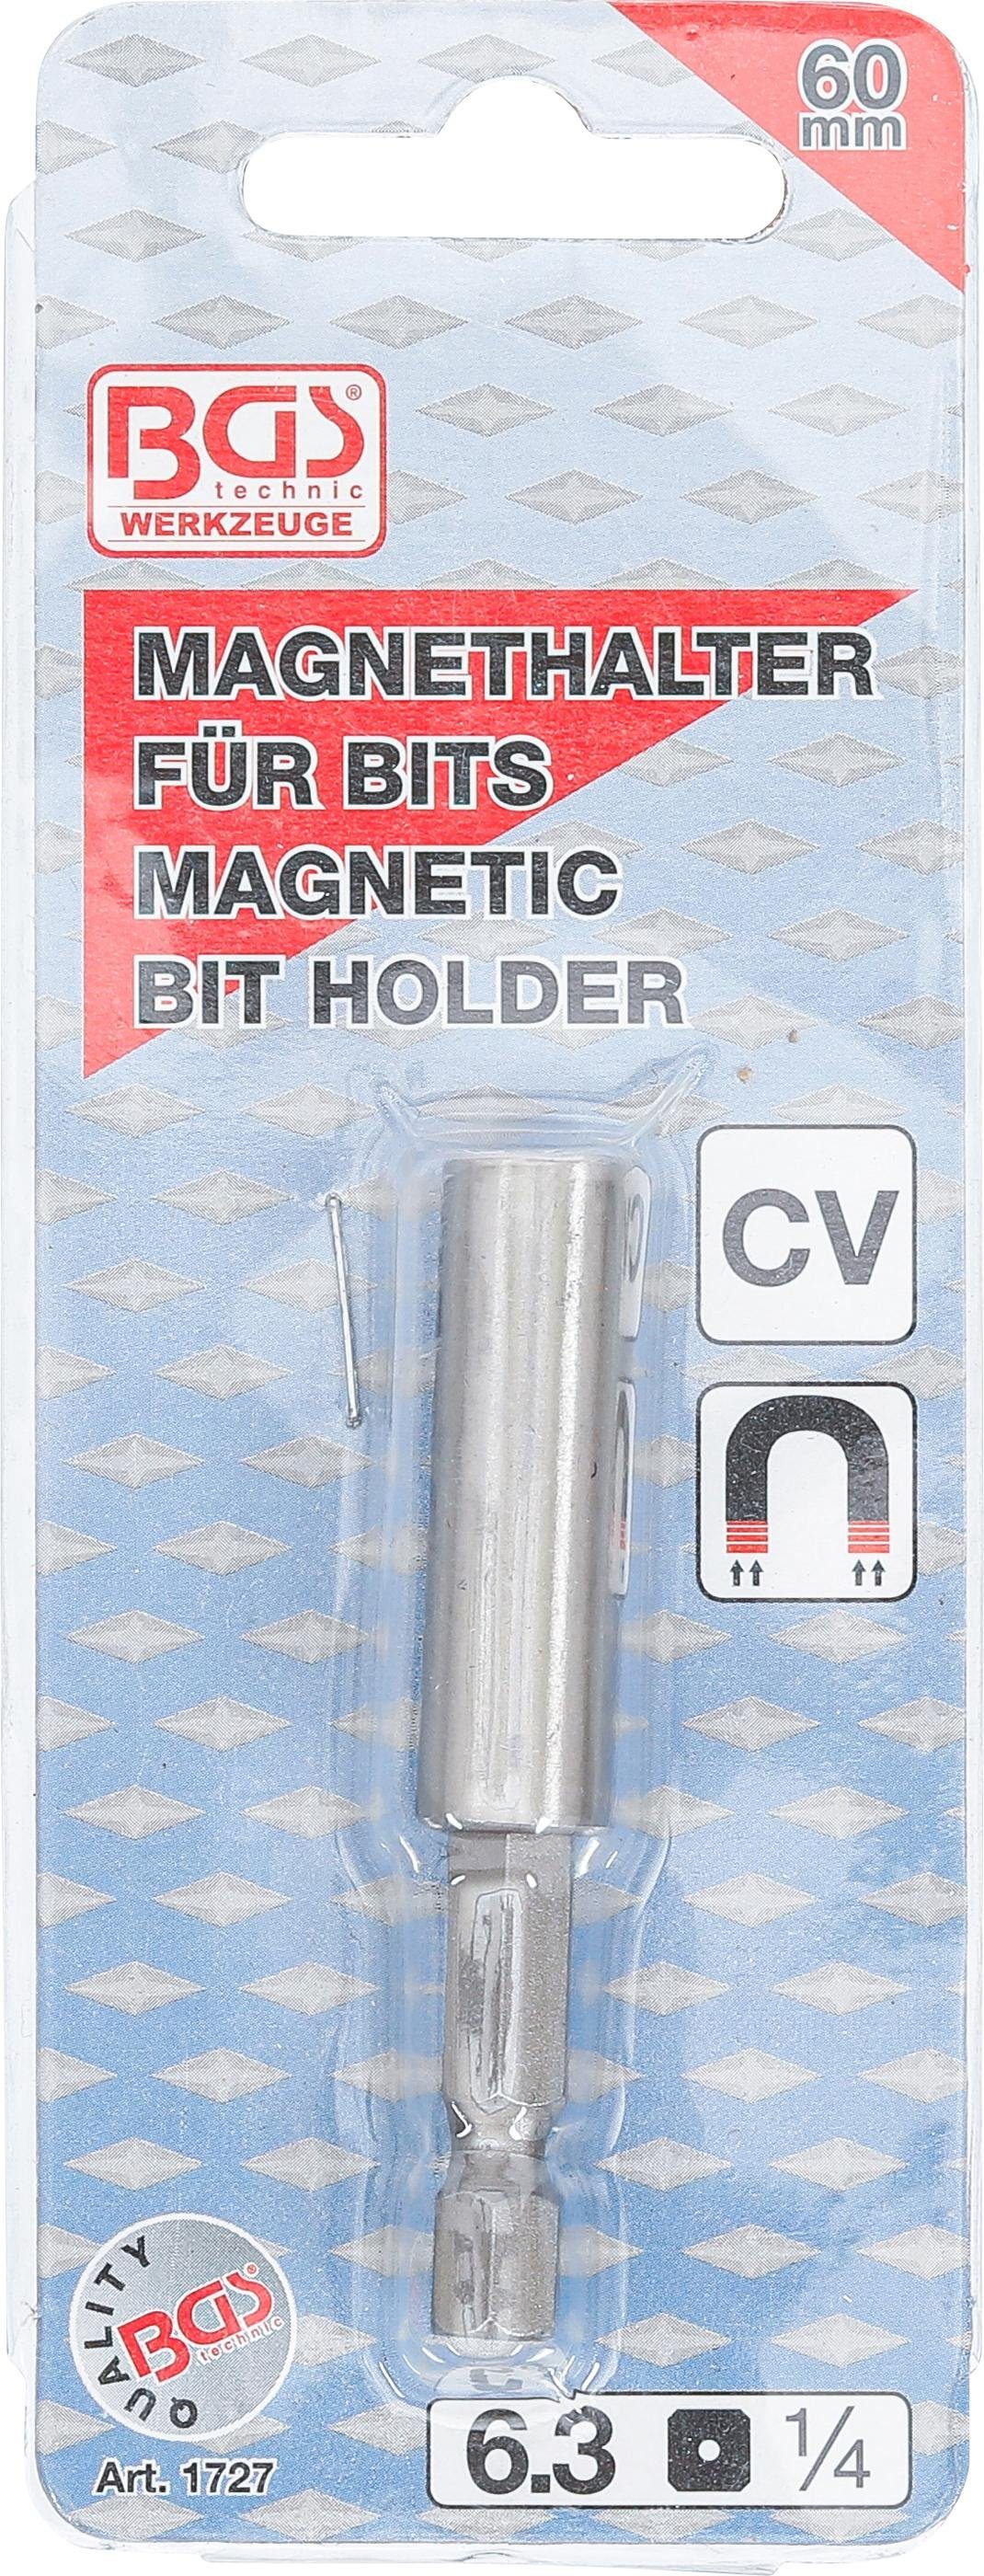 Magnetischer technic 6,3 Ratschenringschlüssel mm mm Bithalter, (1/4), BGS stark, Abtrieb extra Außensechskant 60